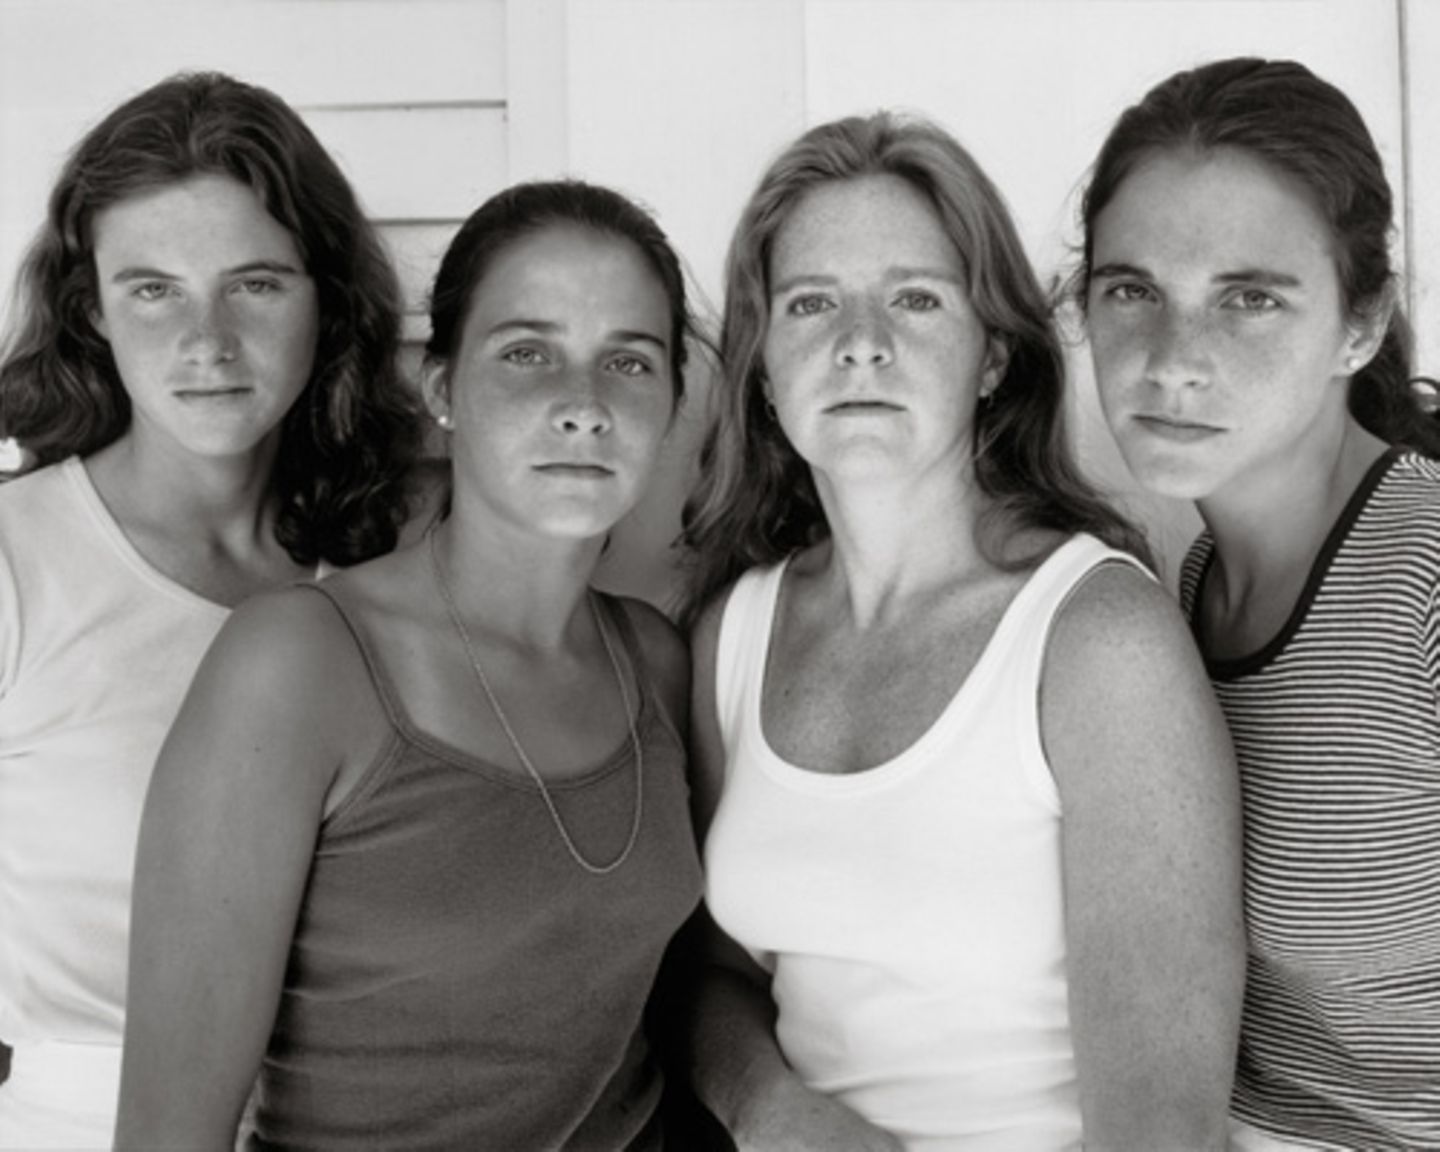 Ein Jahr später machte Nixon ein neues Gruppenfoto der Schwestern Mimi (15), Laurie (21), Heather (23) und Bebe (25), das ihm schon besser gefiel. Nach einem weiteren Gruppenfoto im folgenden Jahr waren sich alle einig, dass es von nun an jährlich ein Bild der Schwestern geben sollte.